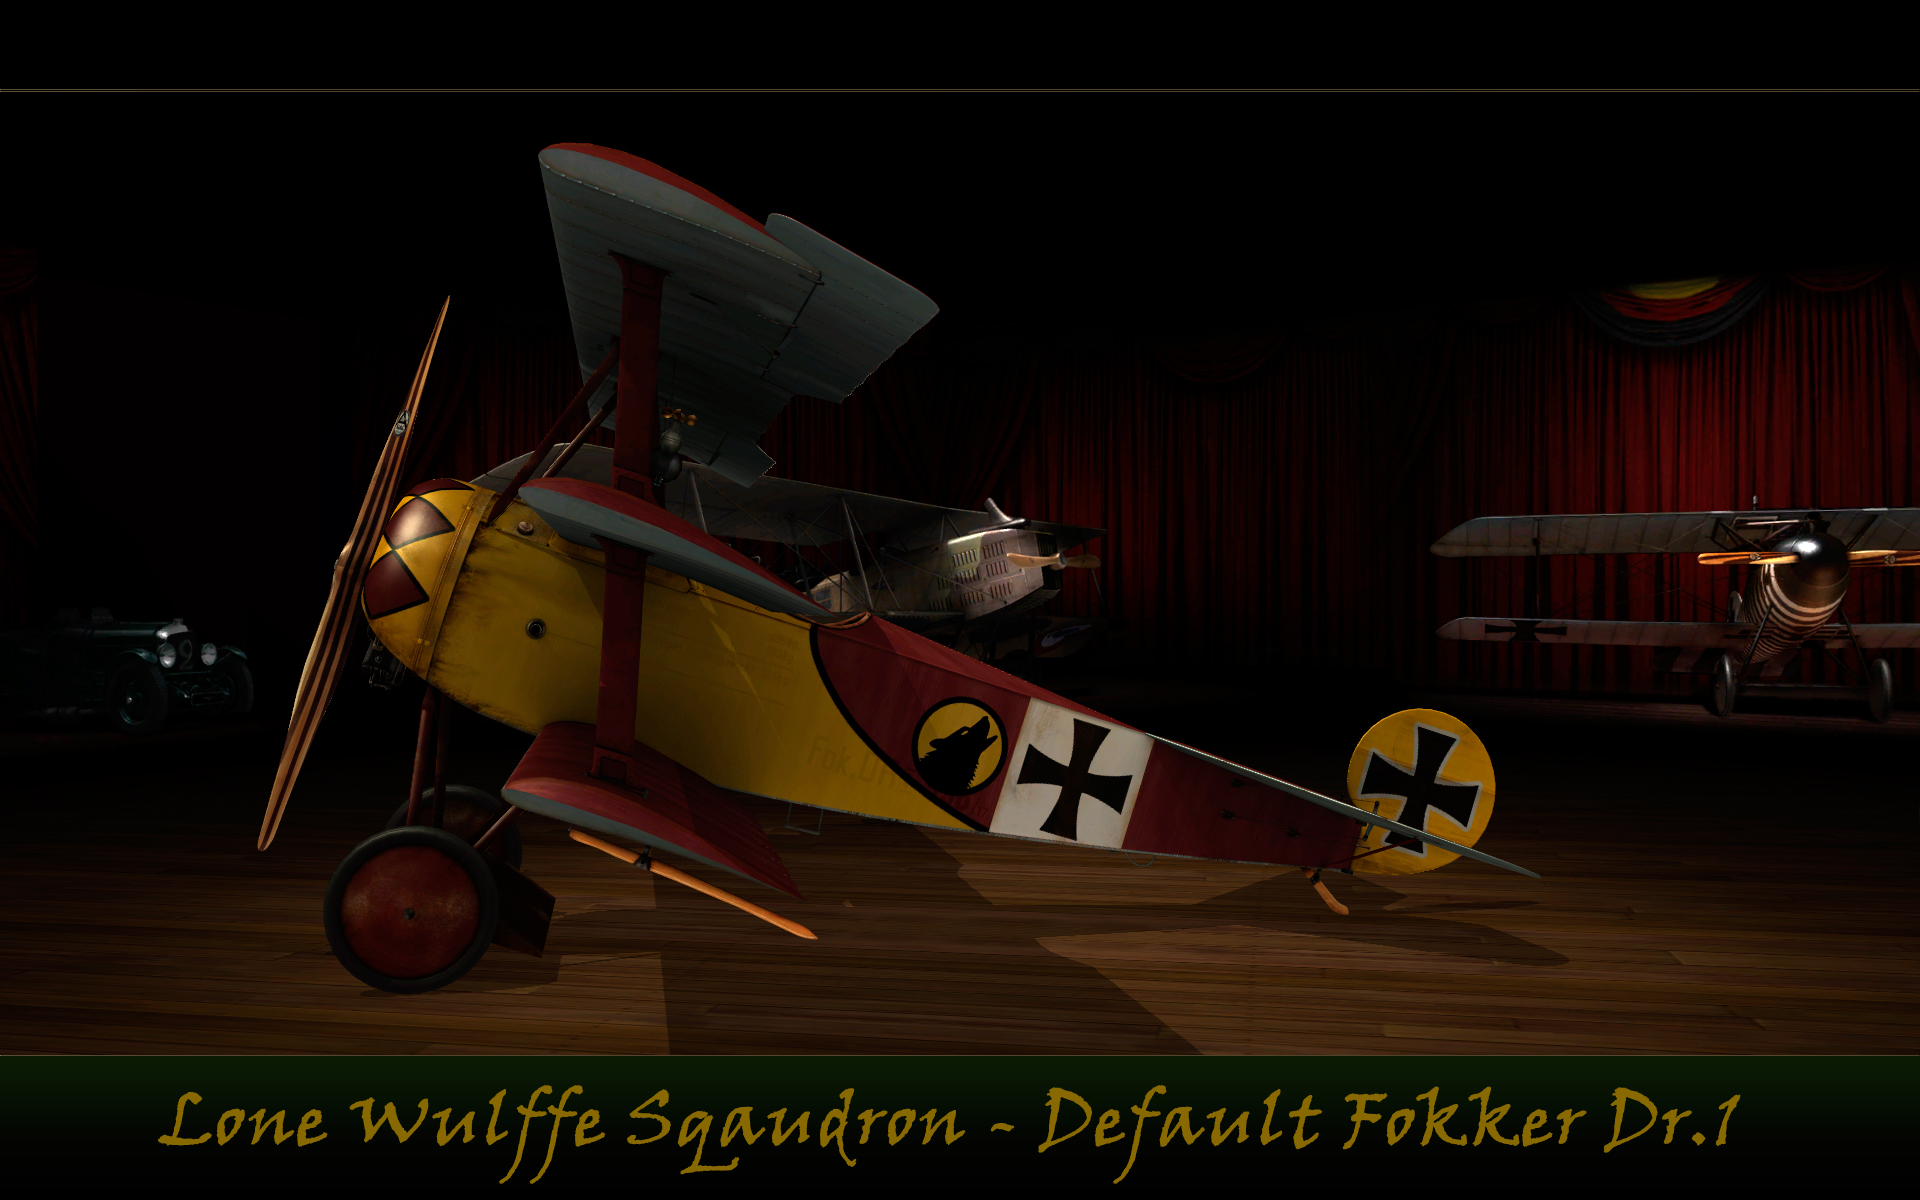 Lone Wulffe Default Fokker Dr.1 - Hangar